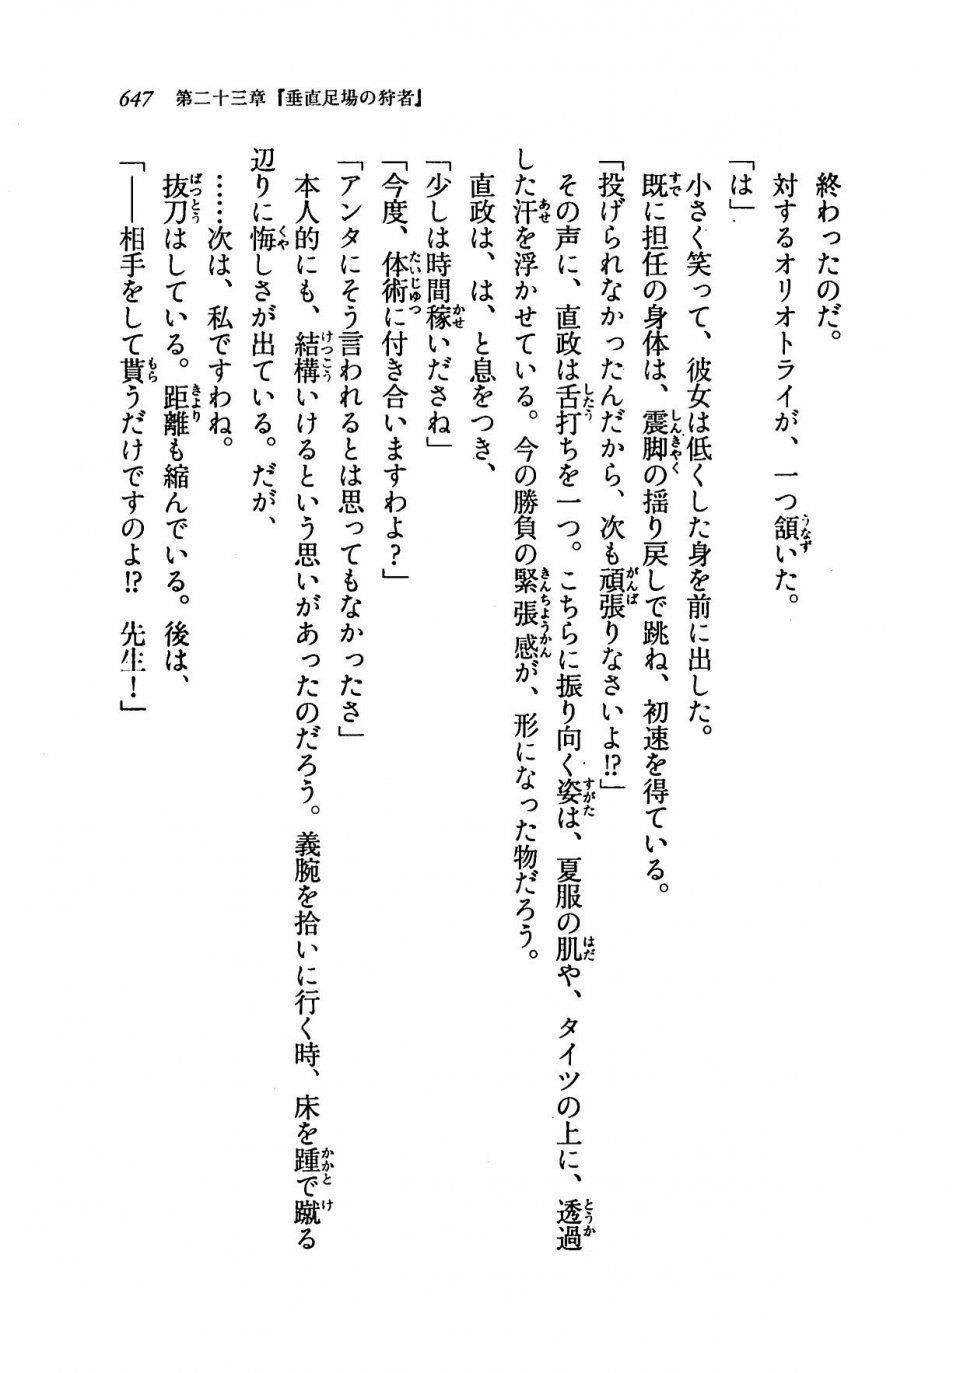 Kyoukai Senjou no Horizon LN Vol 19(8A) - Photo #647